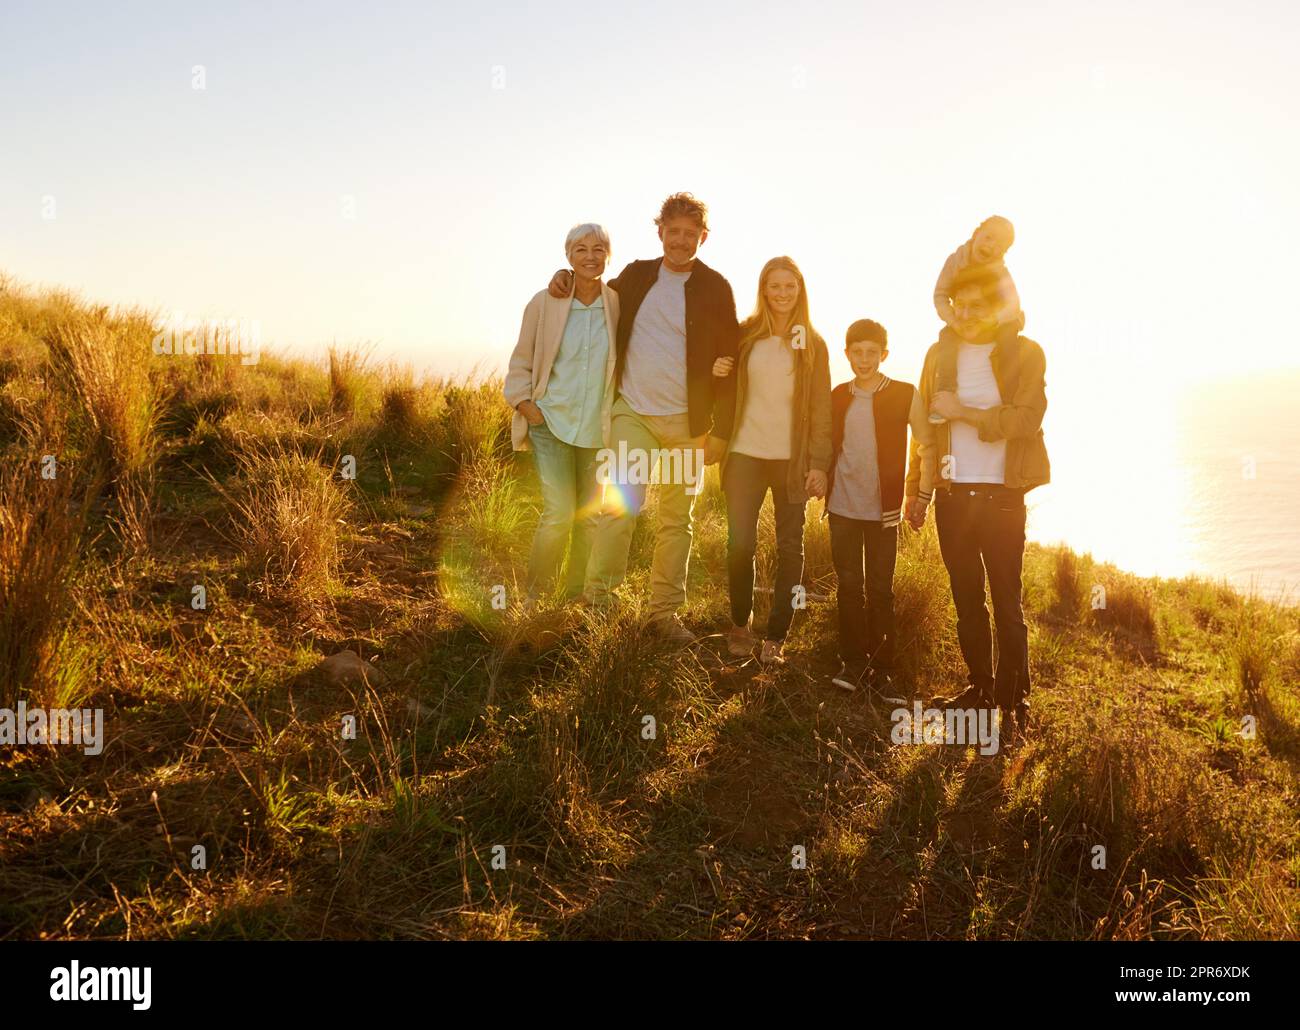 Sie sind am glücklichsten, wenn sie alle zusammen sind. Ein Porträt einer glücklichen Familie, die bei Sonnenuntergang auf einem grasbewachsenen Hügel steht. Stockfoto